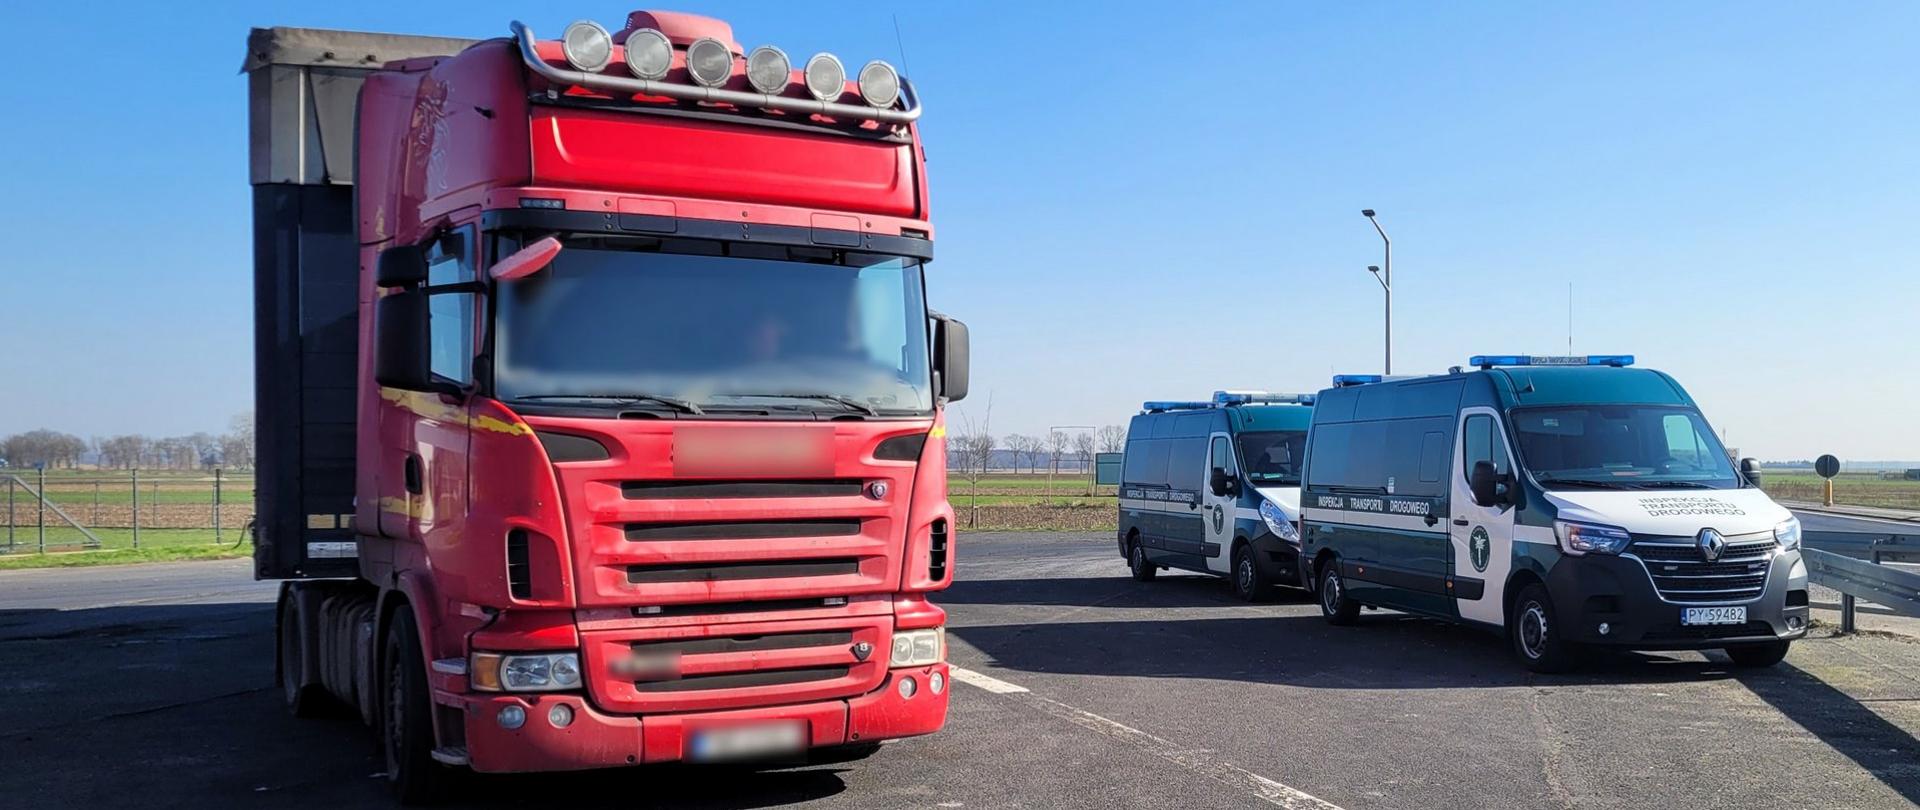 Inspektorzy z Wielkopolski zatrzymali dowody rejestracyjne od pojazdów, które wyjechały na drogę niesprawne